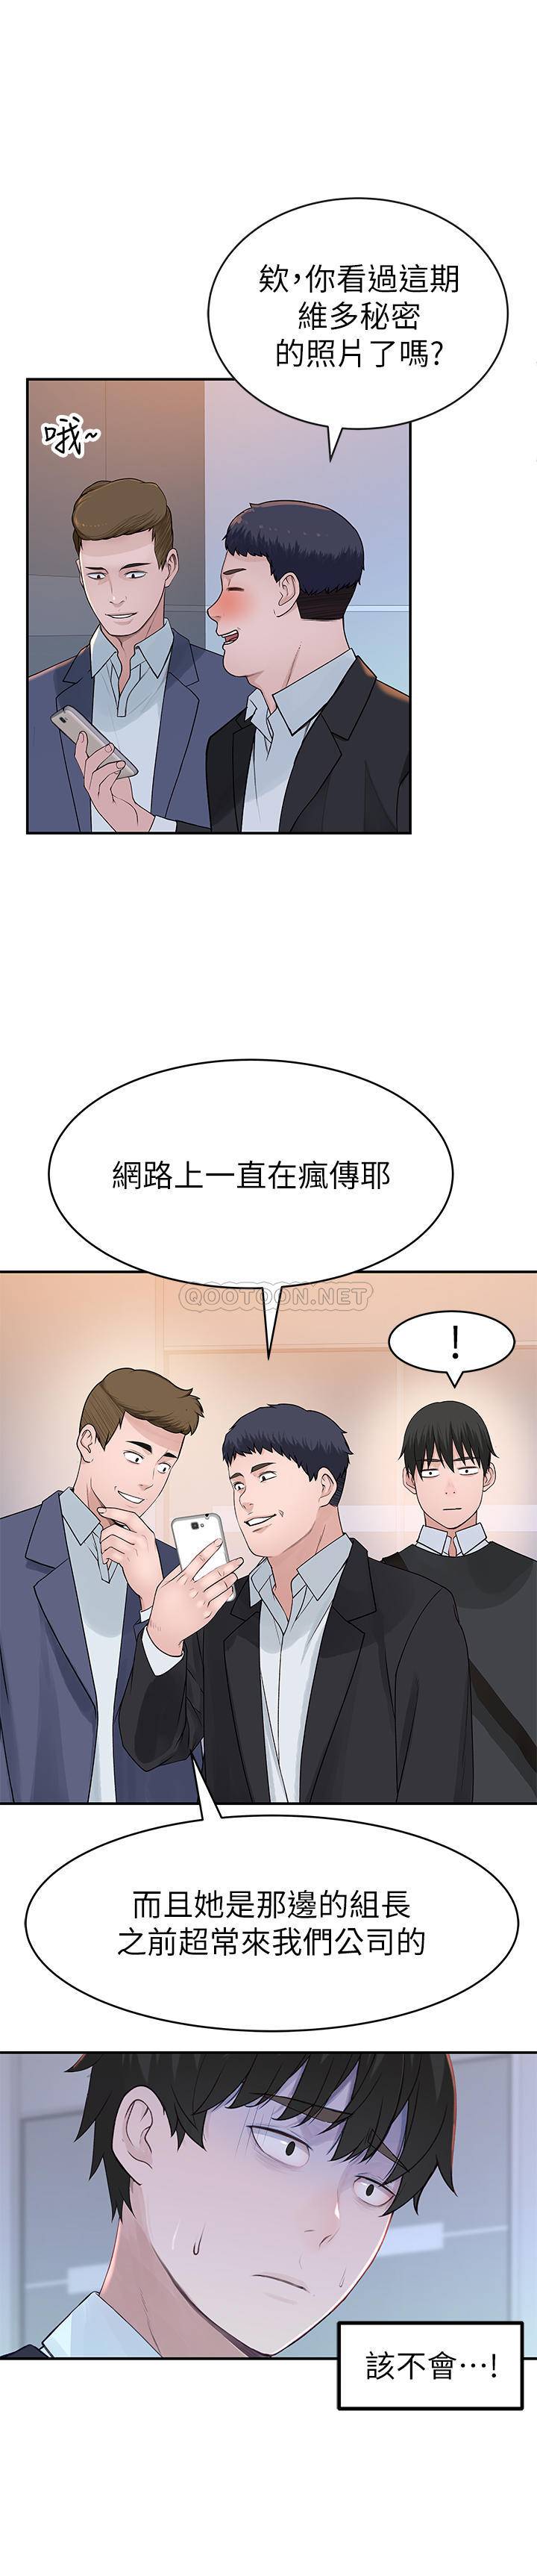 韩国污漫画 我們的非常關系 第44话-纯欣的内衣照传遍网路 33